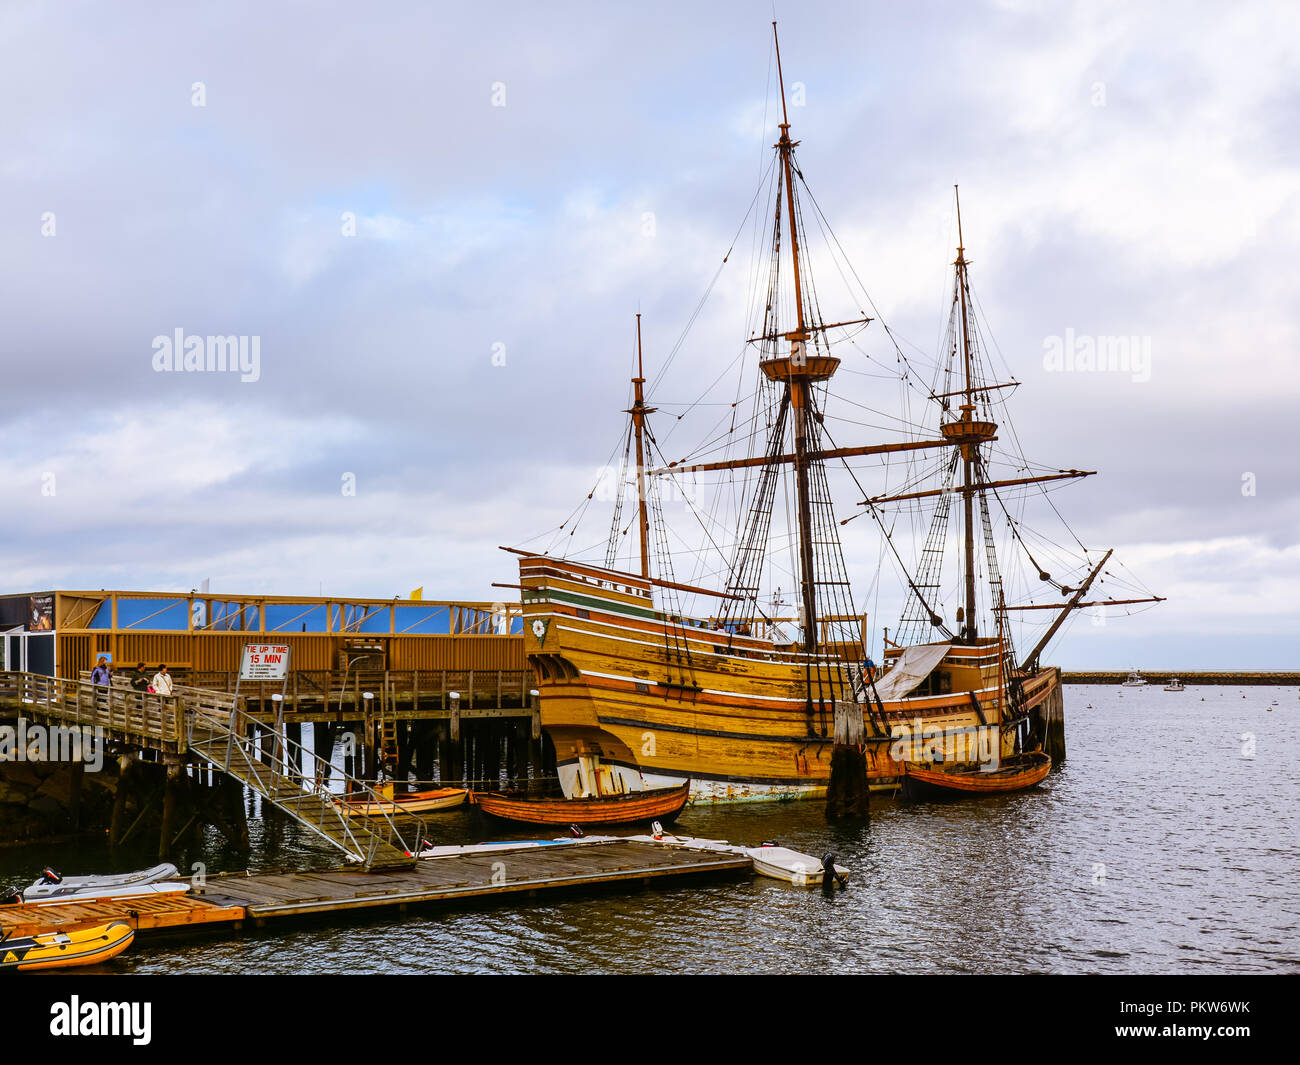 Mayflower II - Replikat des aus dem 17. Jahrhundert Schiff Mayflower, gefeiert für die Pilger, die den Transport in die Neue Welt. Stockfoto